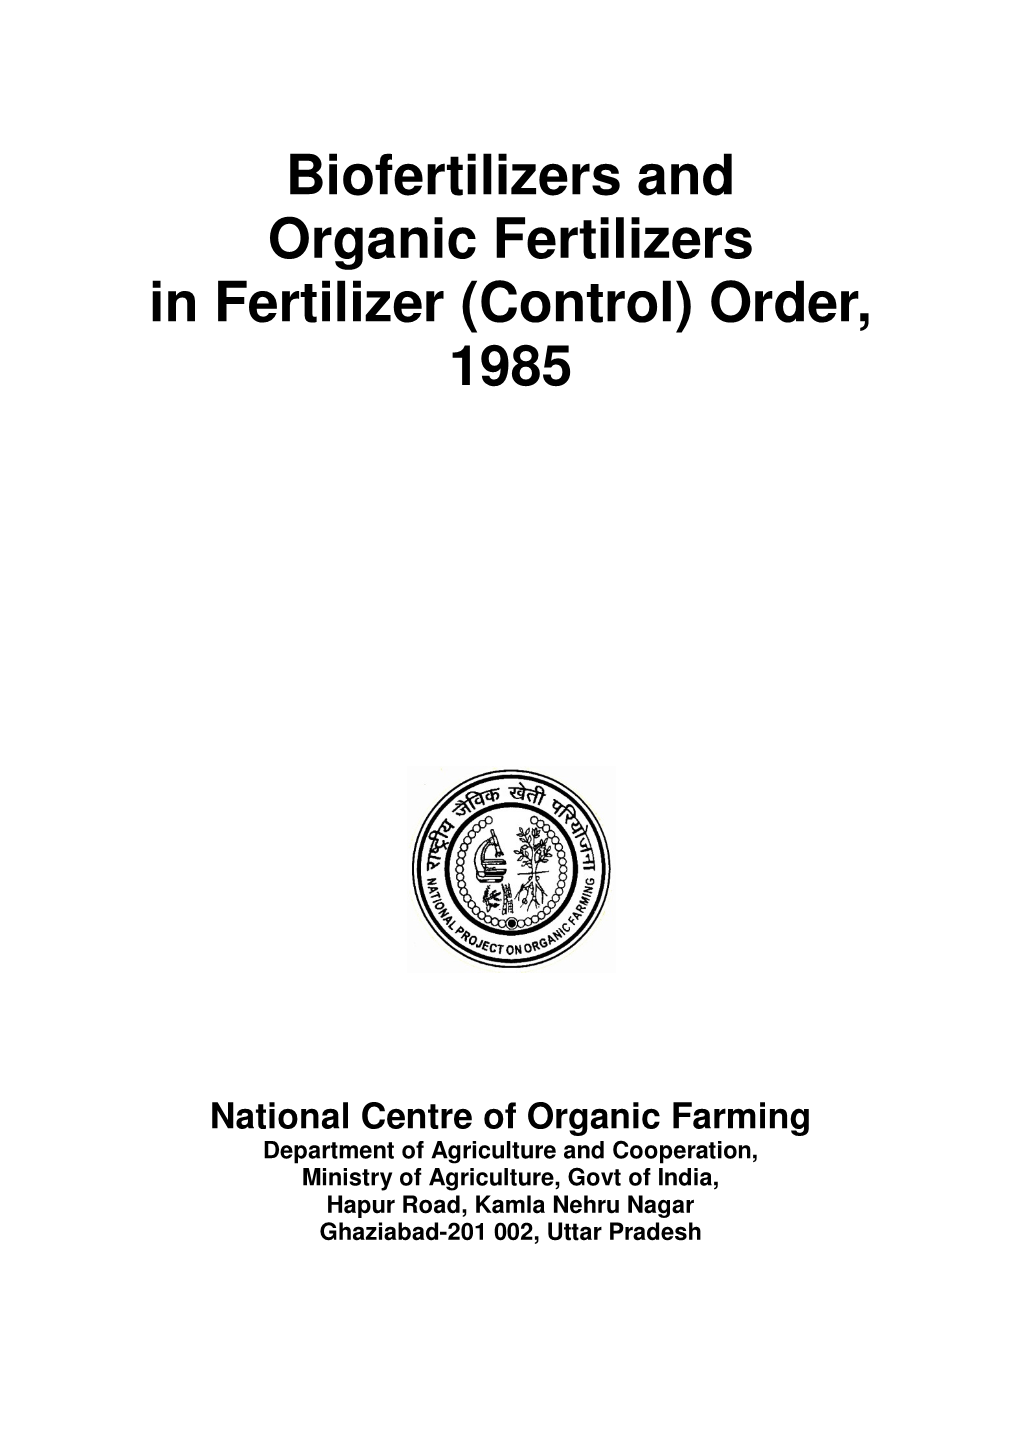 Biofertilizers and Organic Fertilizers in Fertilizer (Control) Order, 1985